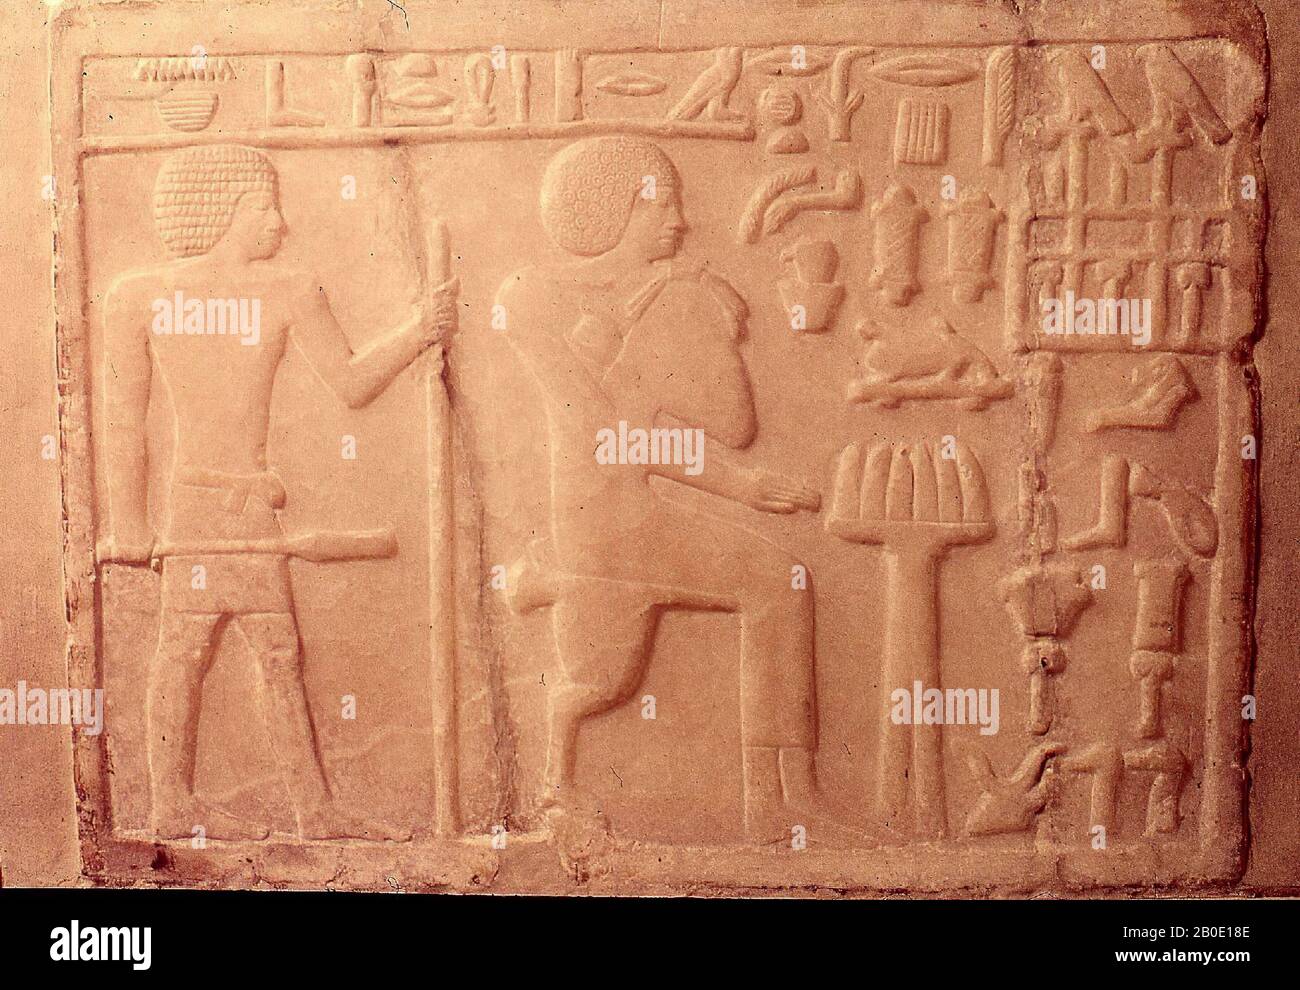 Egitto, stela, alabastro, 36 x 53 x 15 cm, 14 3, 16 x 20 7, 8 x 5 7, 8 in, c., 90 kg, Vecchio Impero, Dinastia 3rd, Egitto Foto Stock